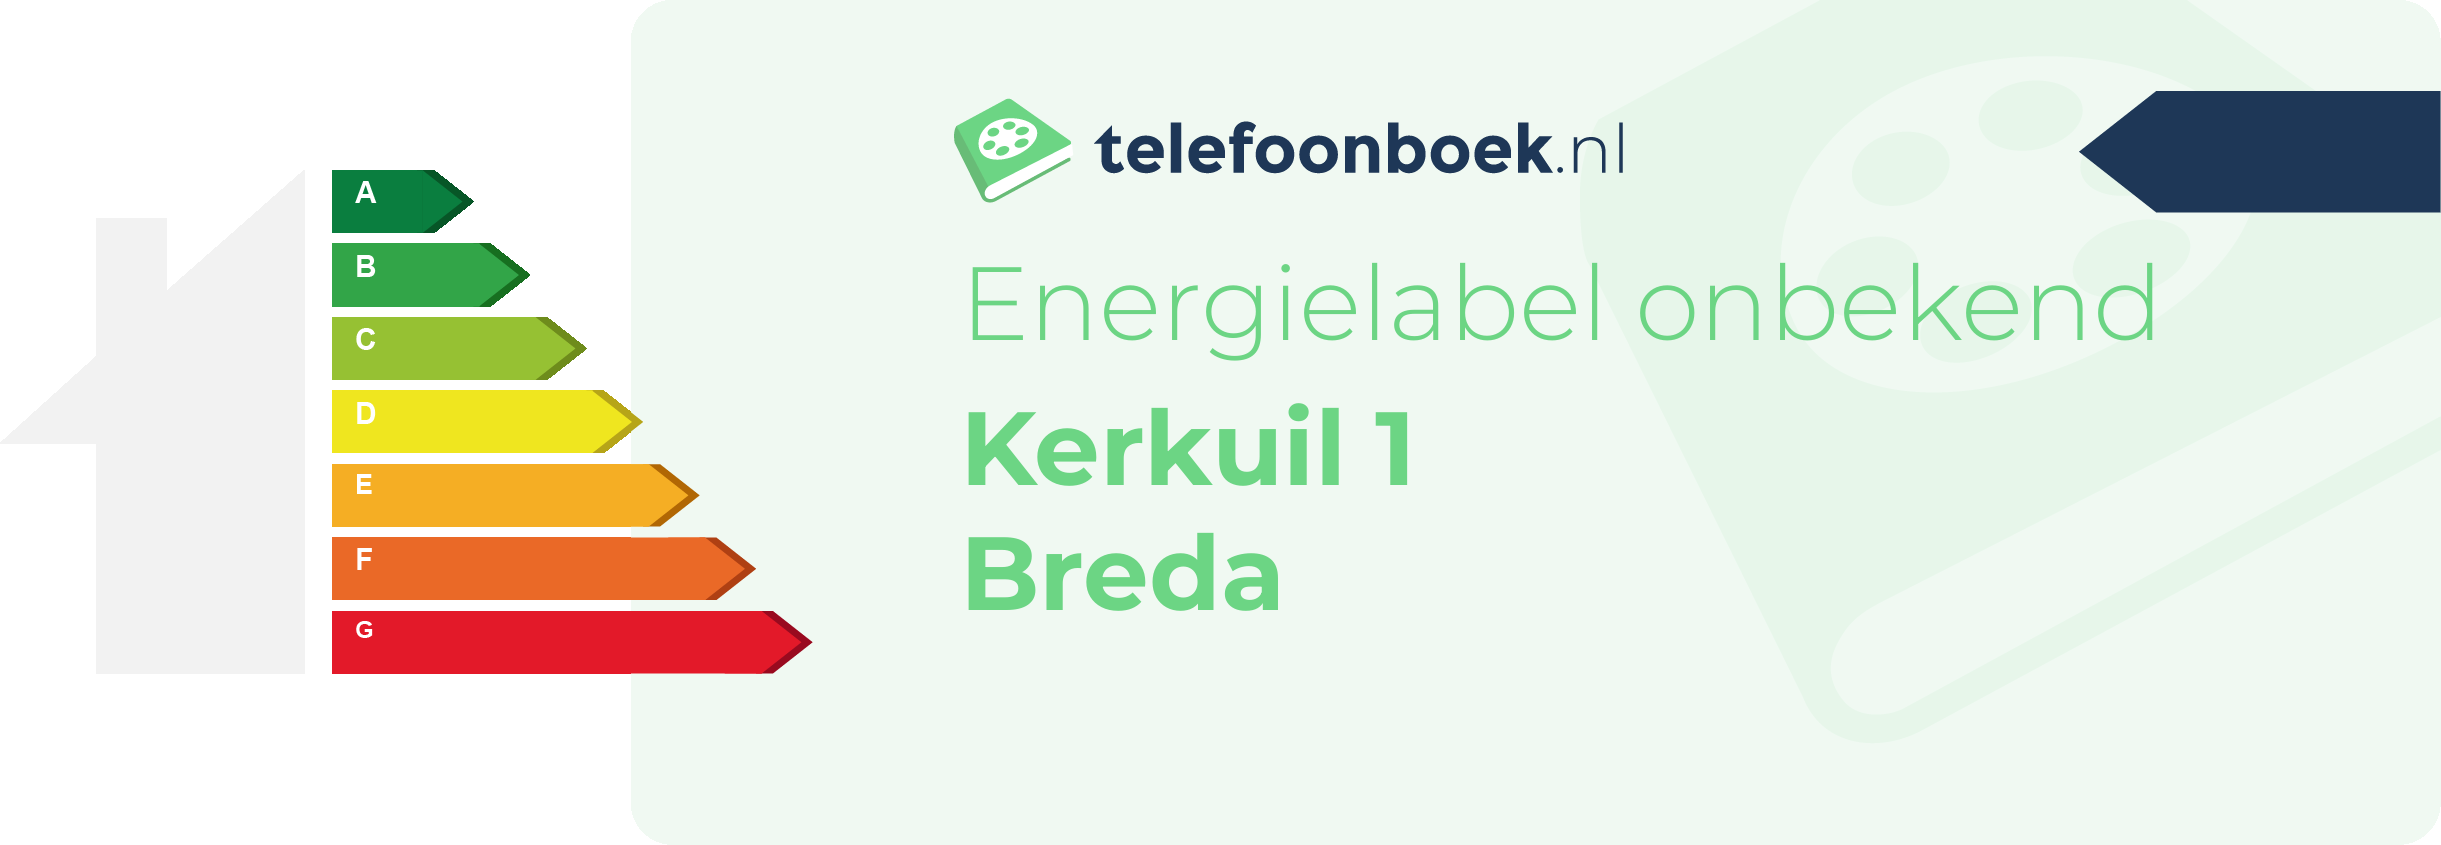 Energielabel Kerkuil 1 Breda